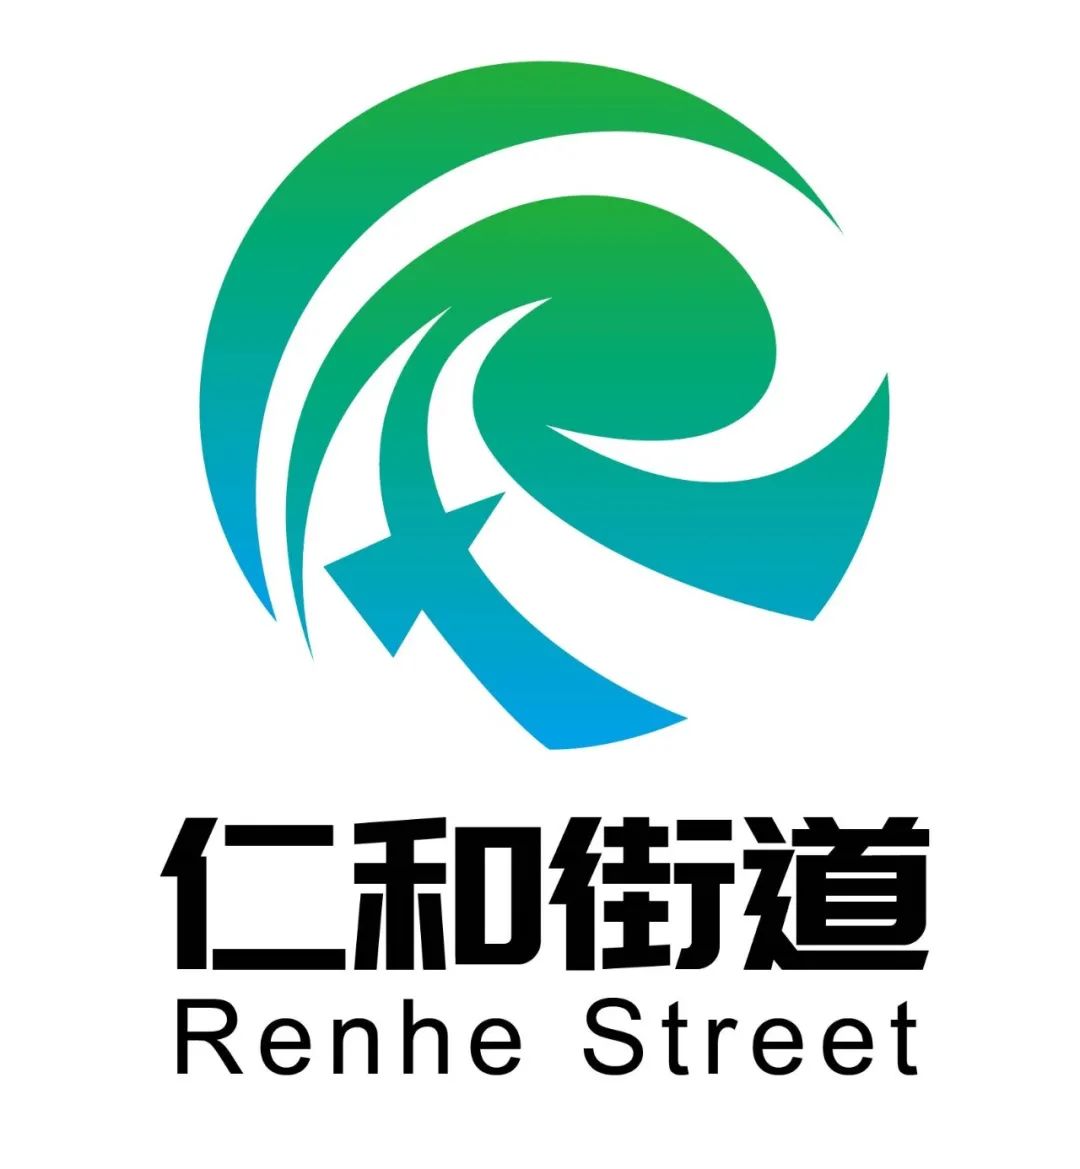 街道logo设计作品图片